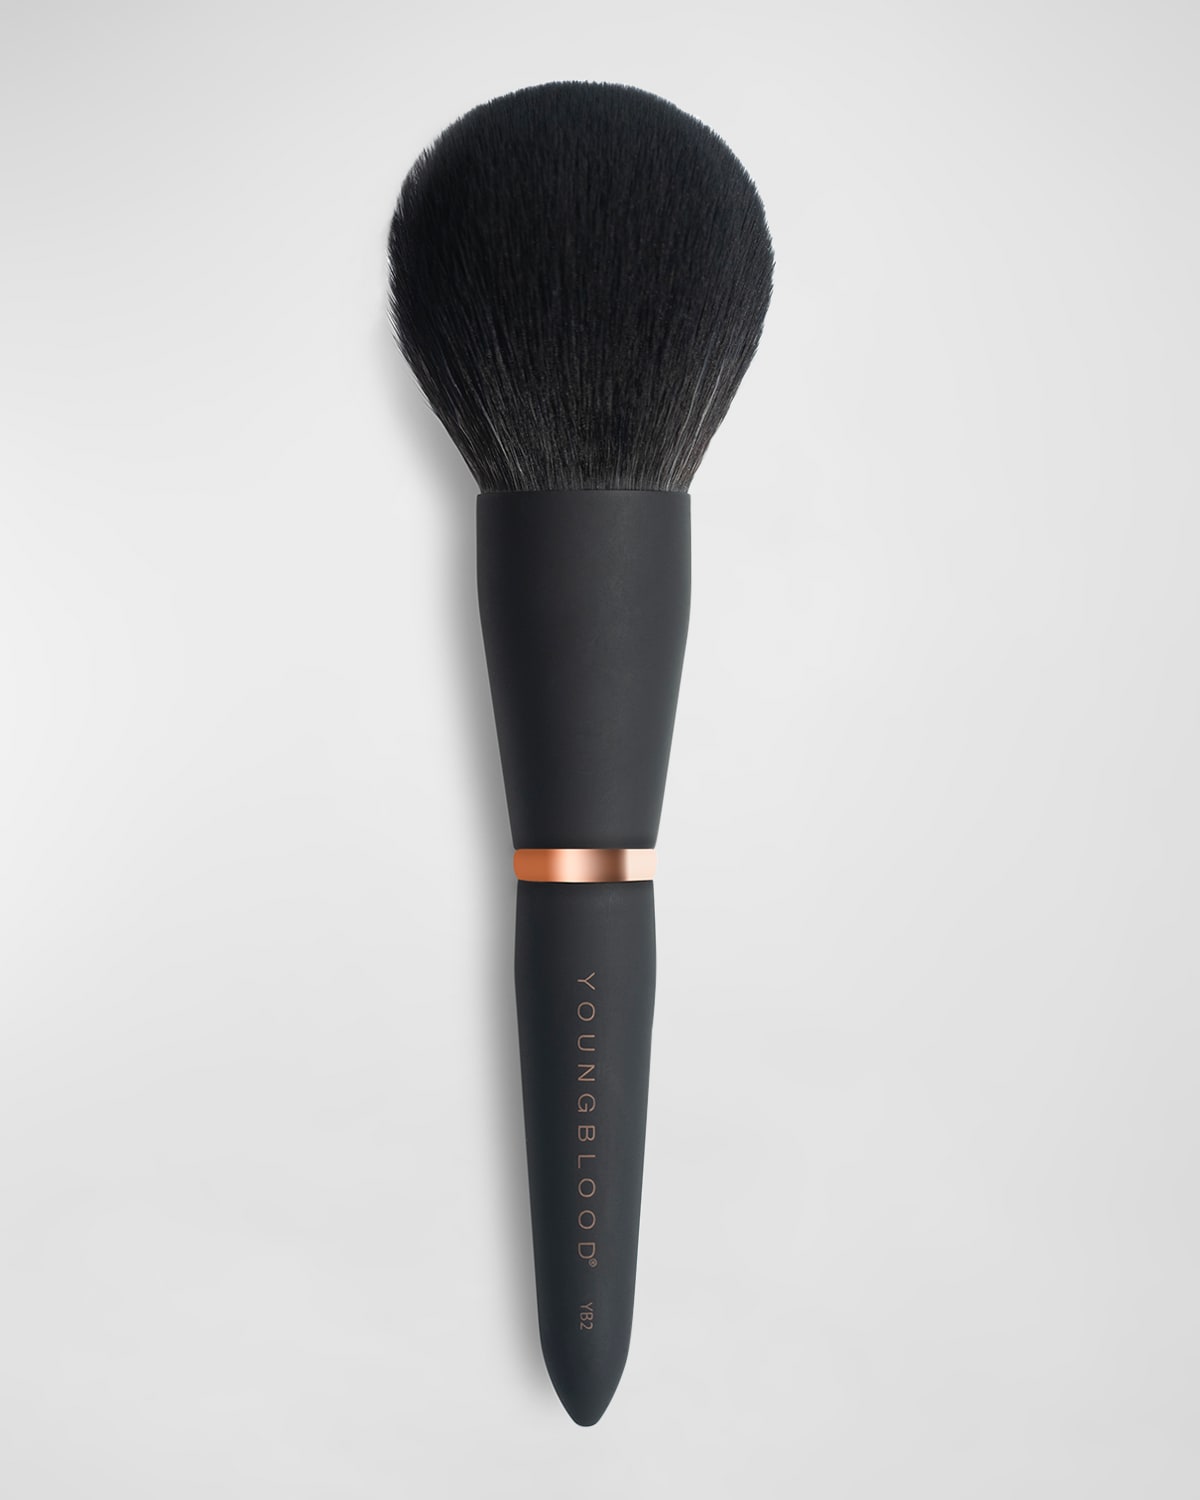 YB2 Powder Luxe Makeup Brush